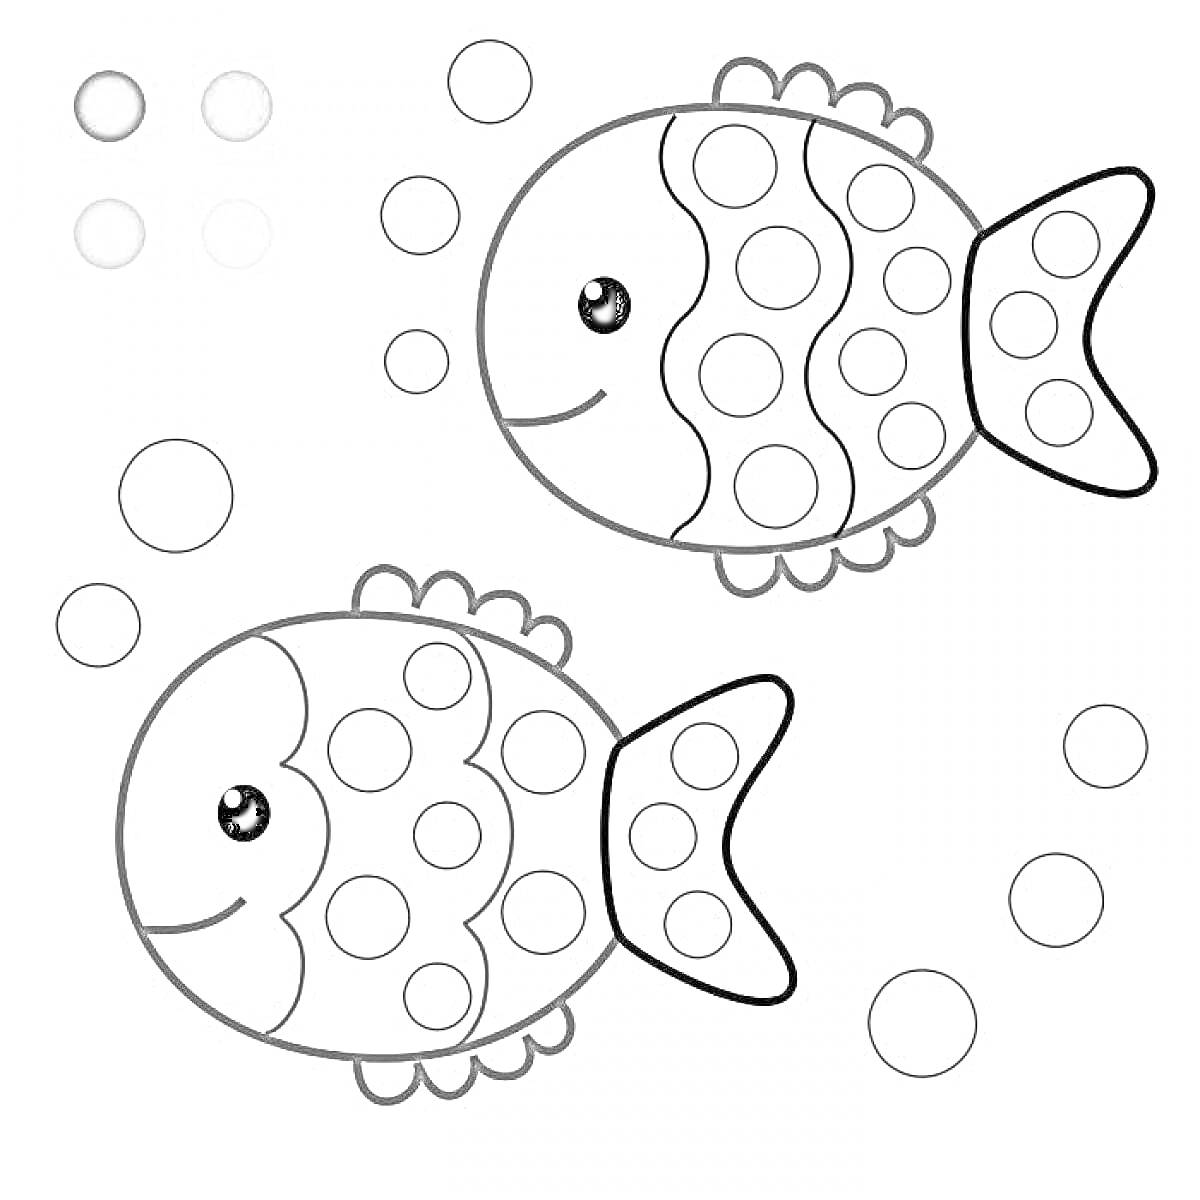 Раскраска Рыбки с пузырьками и цветами для раскрашивания пальчиком (голубой, розовый, сиреневый, желтый)